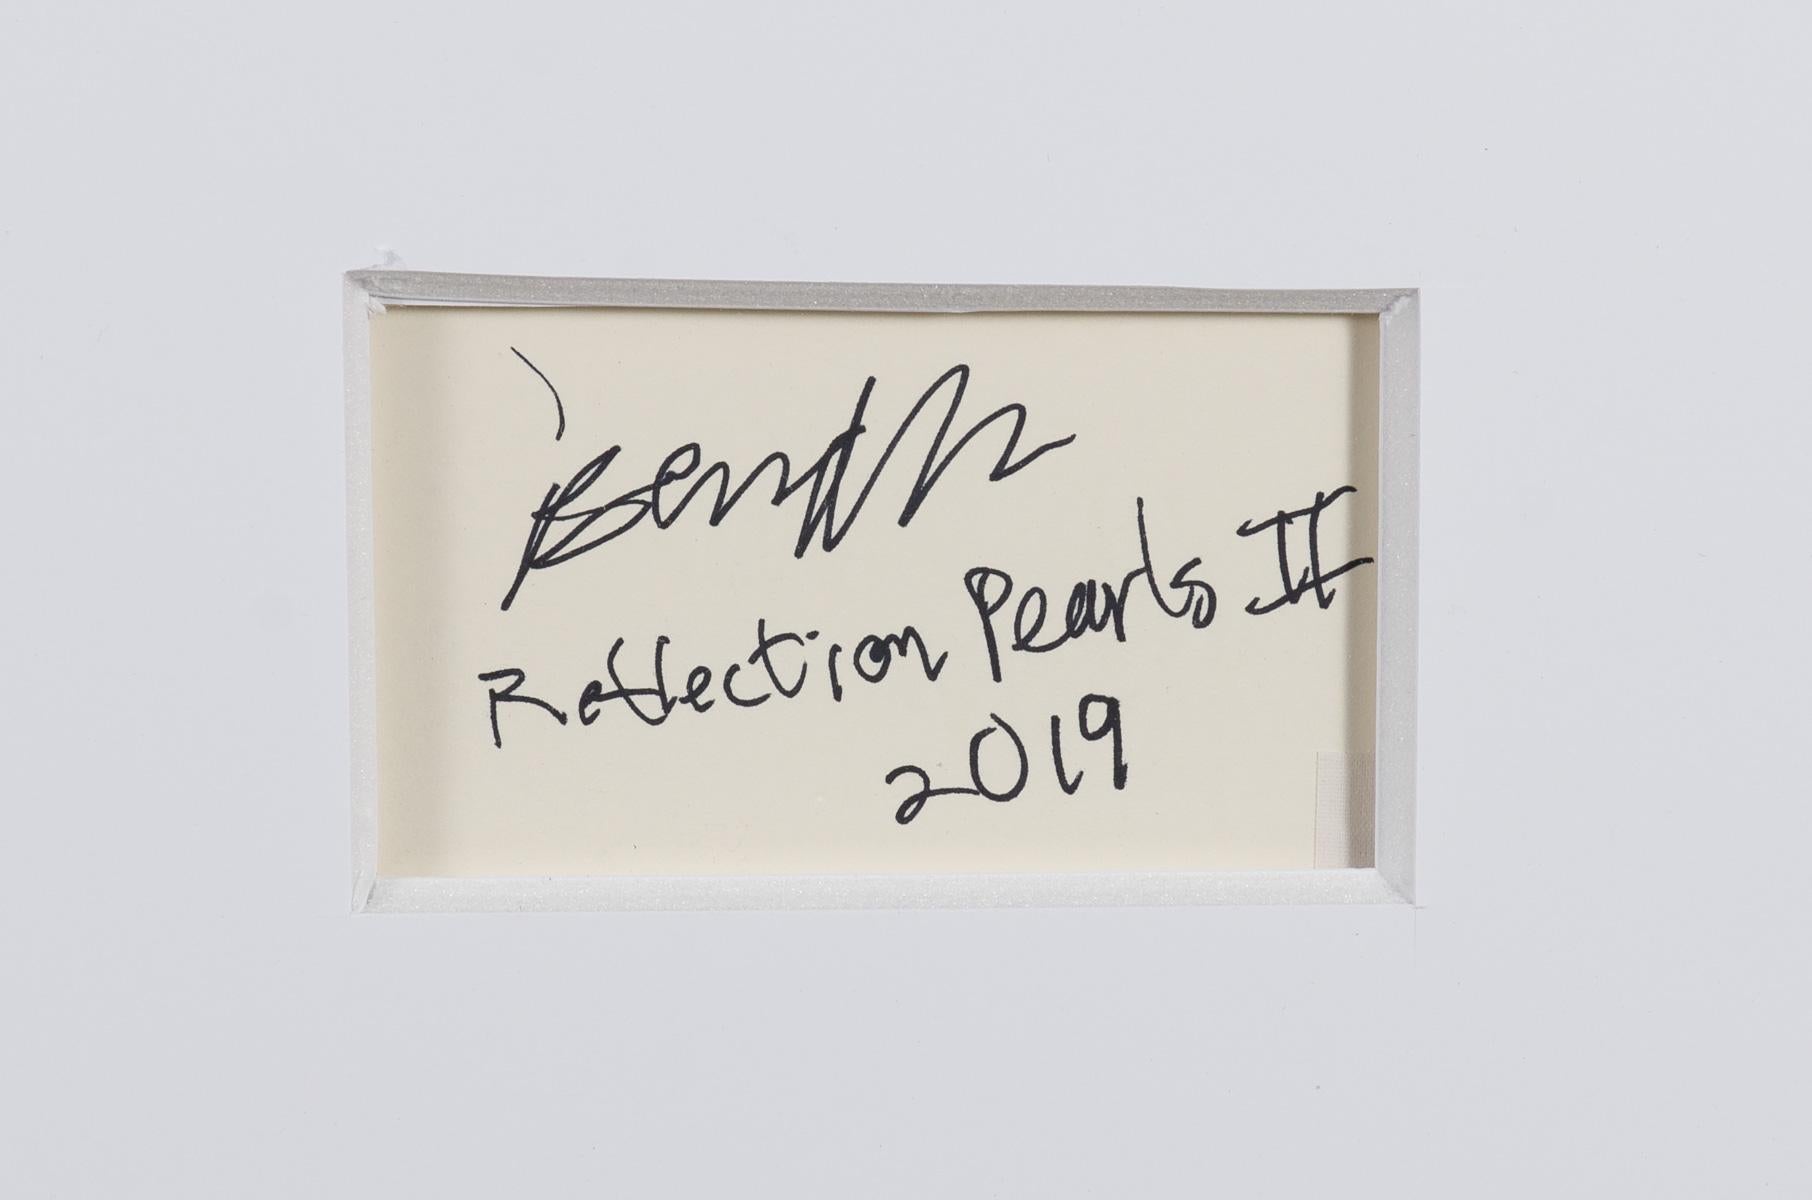 Reflection Pearls II ist ein Ölgemälde auf präpariertem Papier, Blattgröße 29,75 x 41,25 Zoll, signiert, betitelt und datiert verso, 